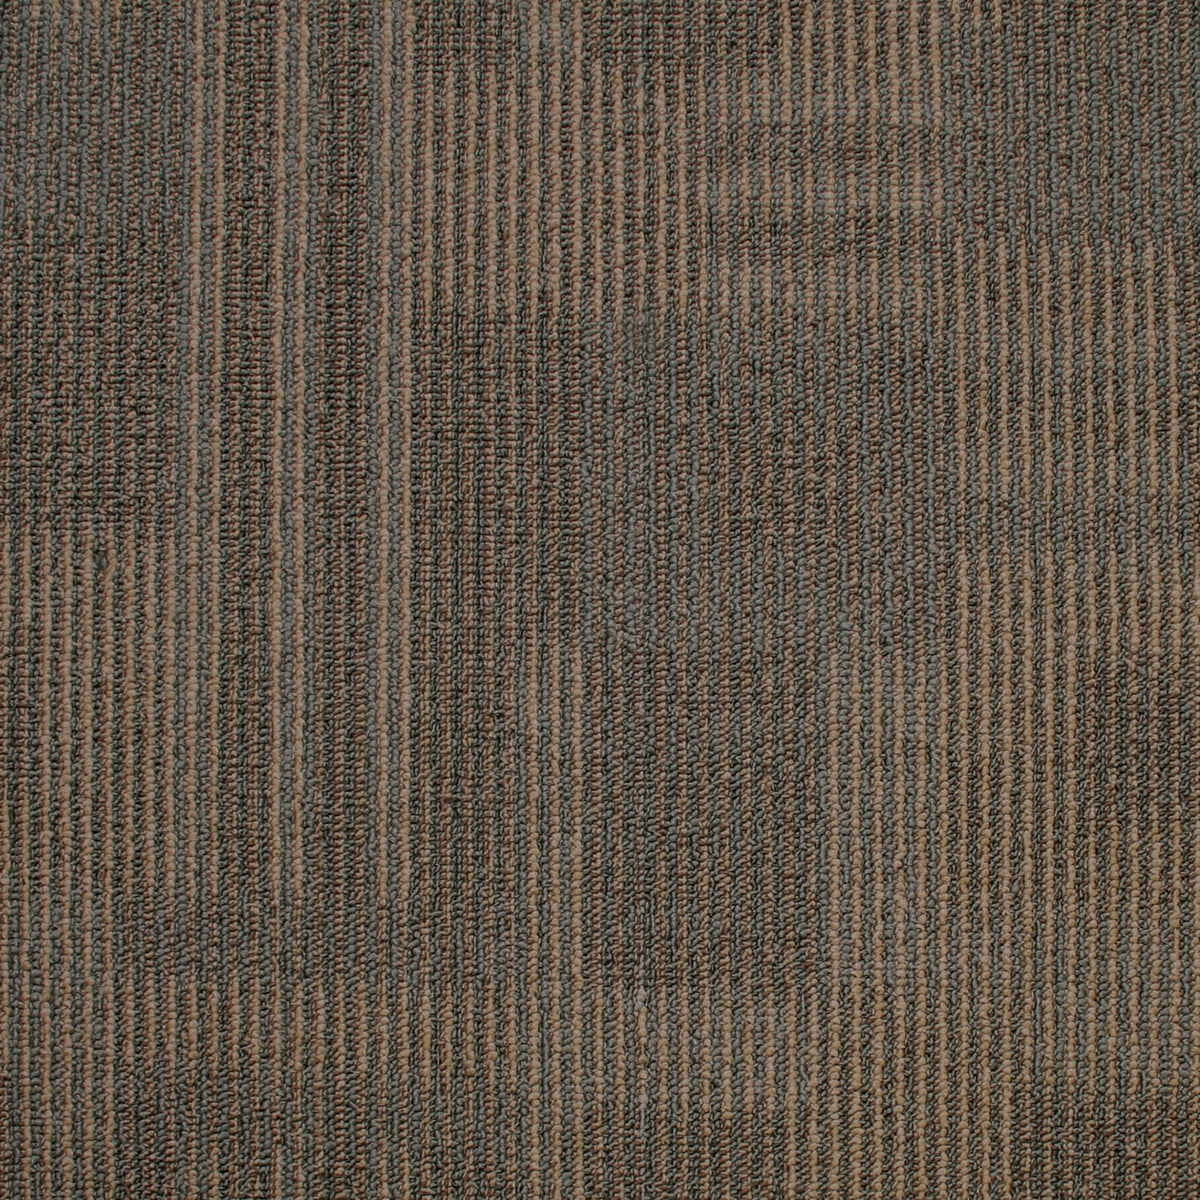 Kraus - Dimensions - Carpet Tile - Sandscript